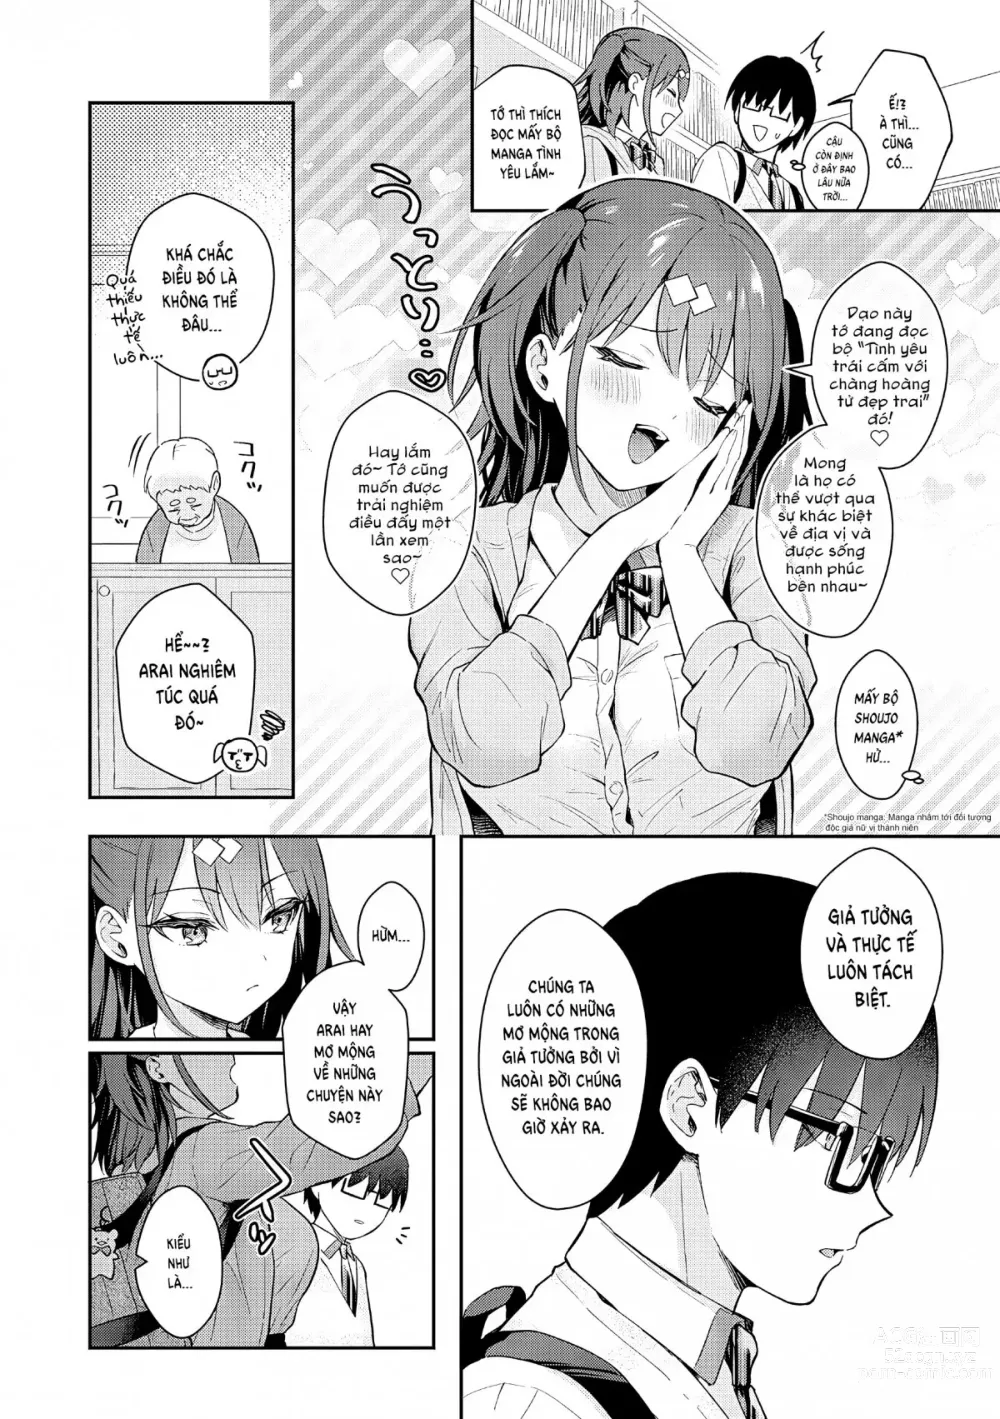 Page 5 of manga Tuyệt hơn cả giả tưởng (decensored)